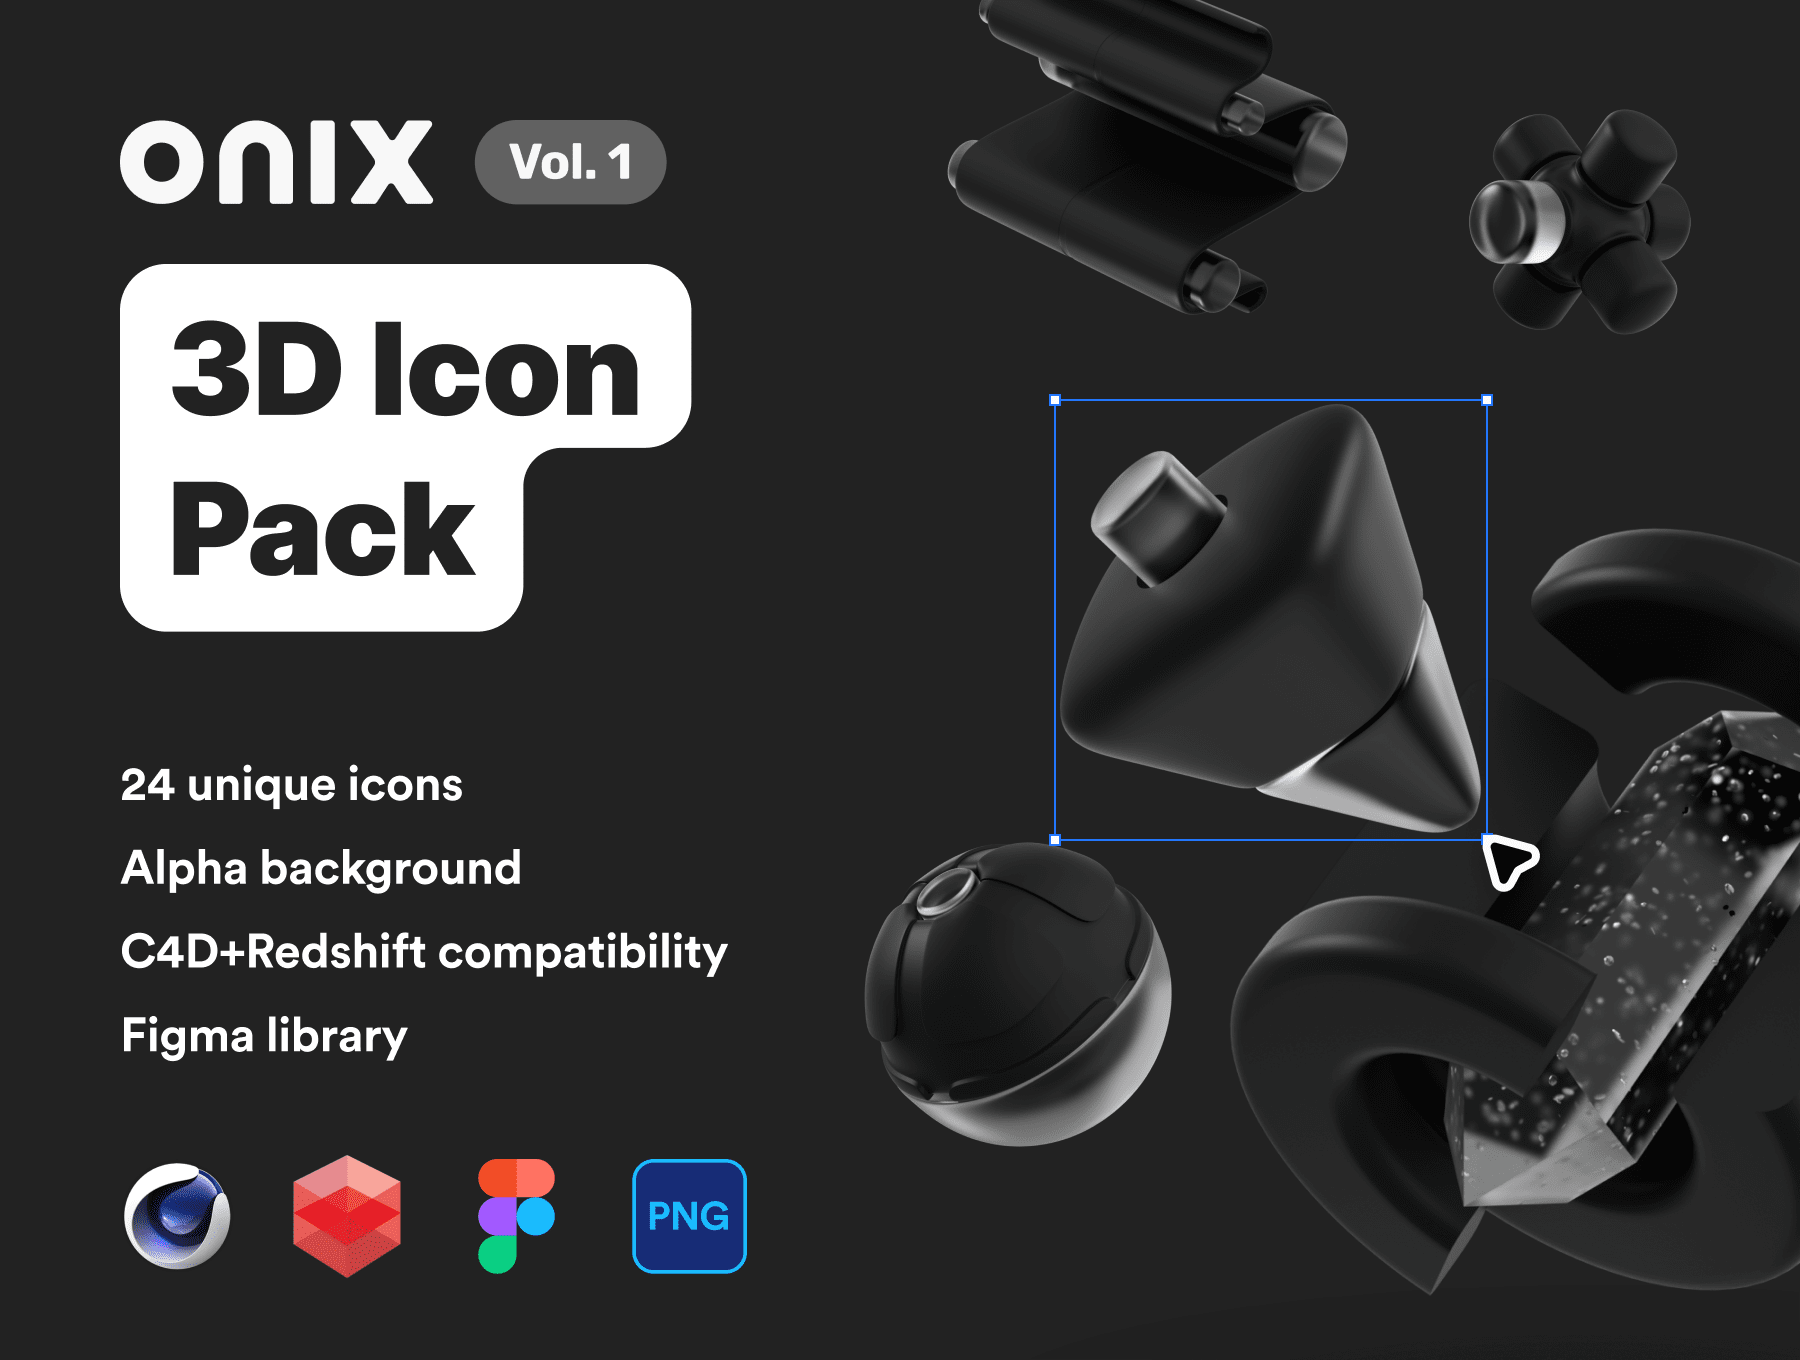 暗黑风格高分辨率几何3D抽象立方体图标模型包 Onix vol. 1 – 3D Icon Pack（6843）